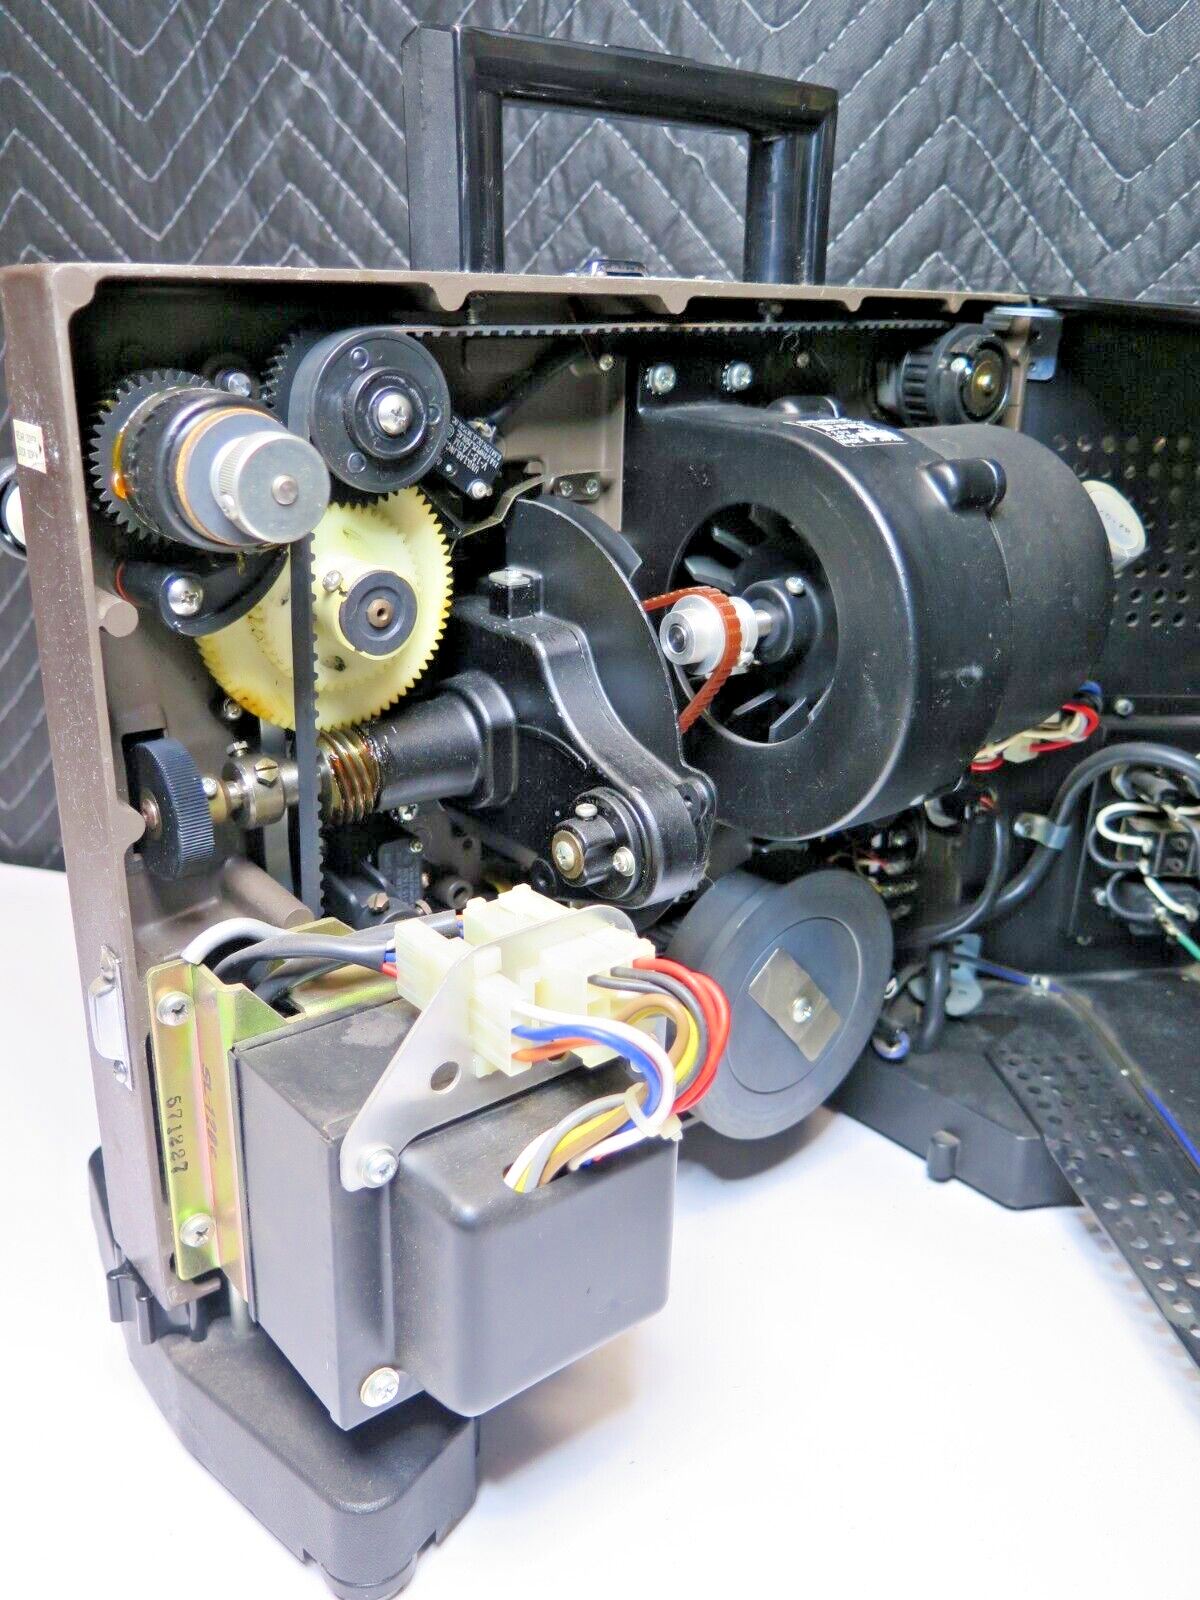 Eiki SL-0ML 16mm Film Super Slot-Load II Sound Projector SL-0